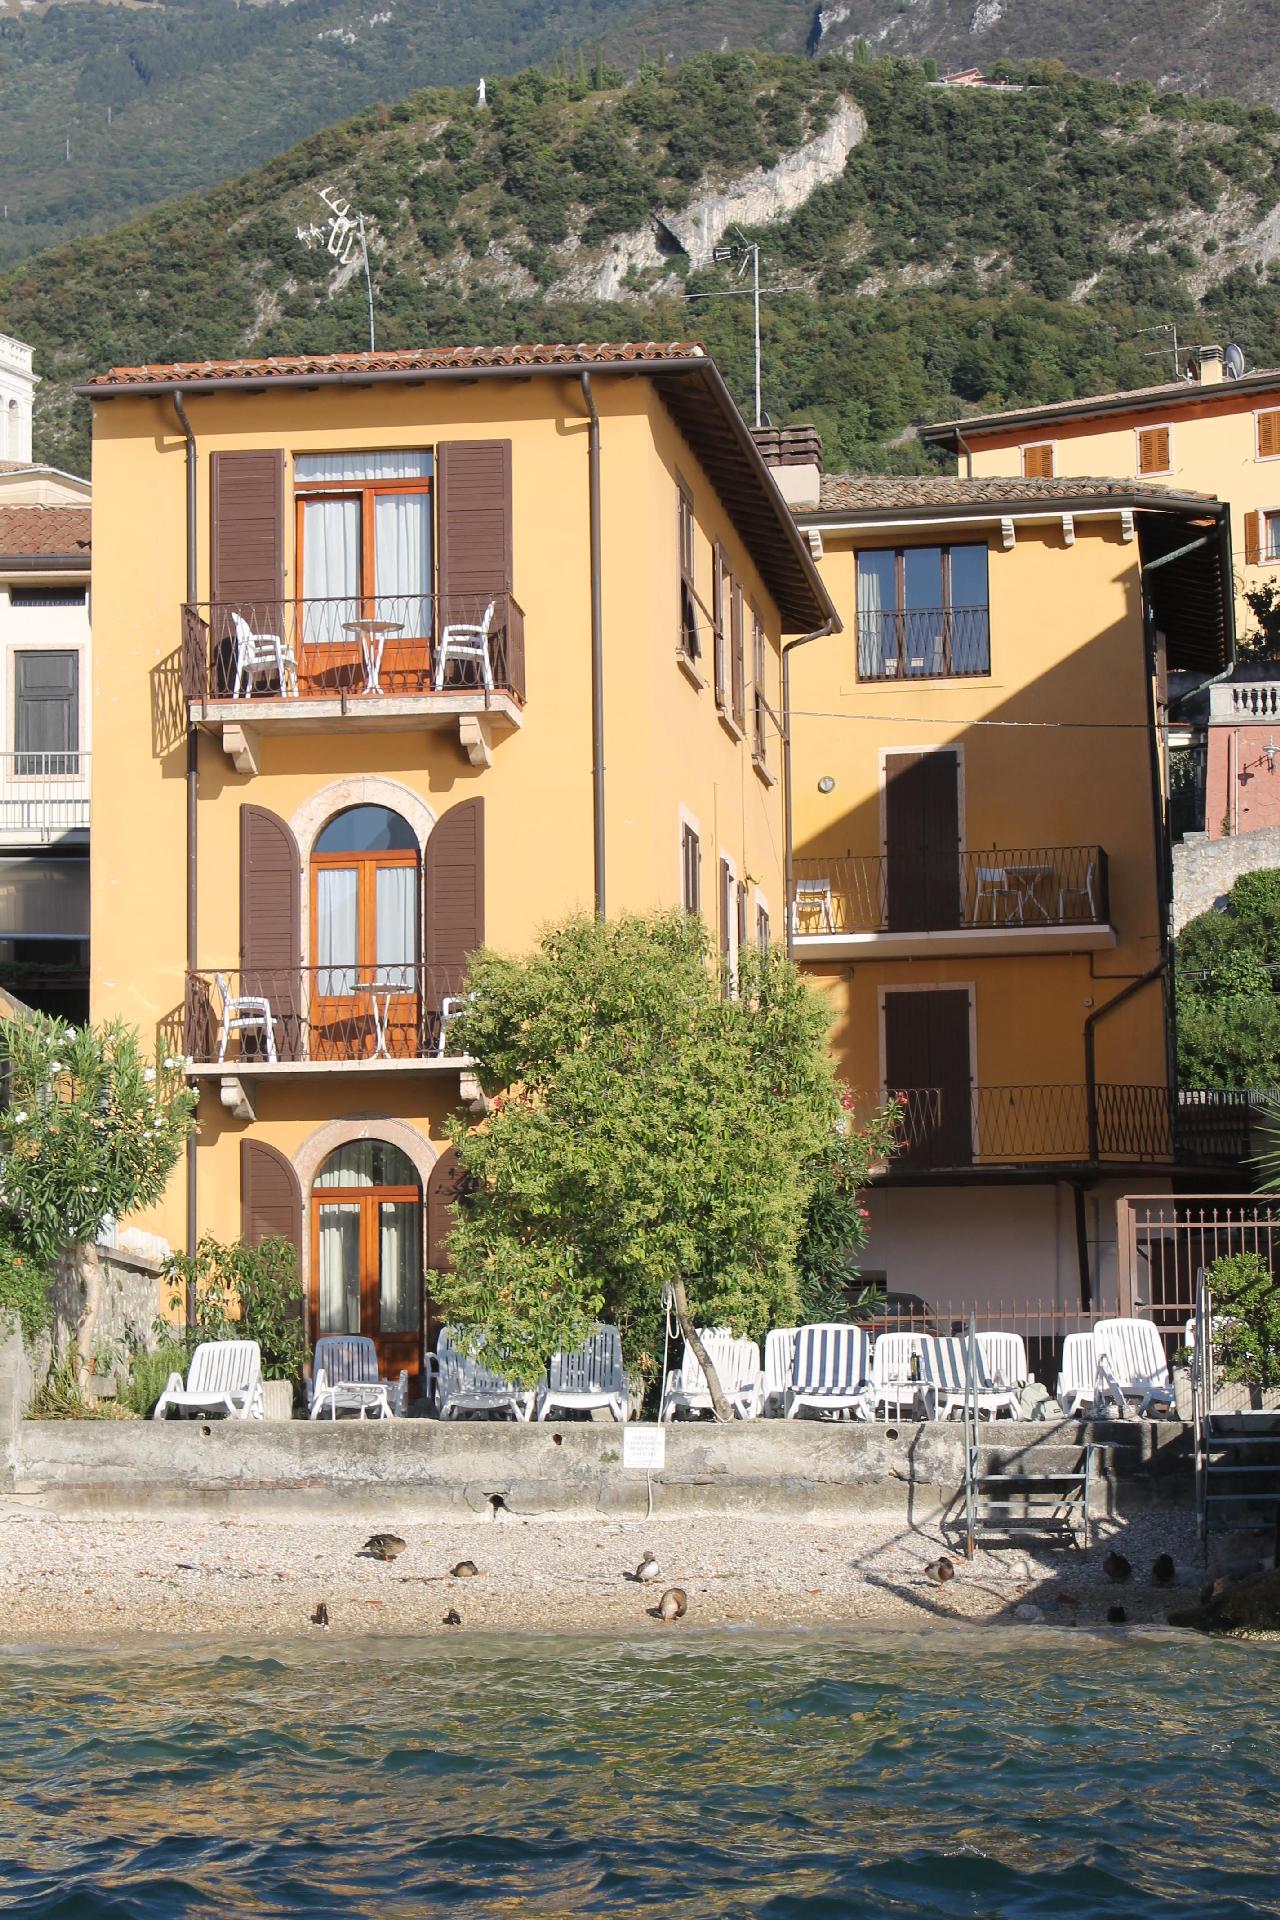 Ferienwohnung für 5 Personen ca. 65 m² i Ferienwohnung in Italien